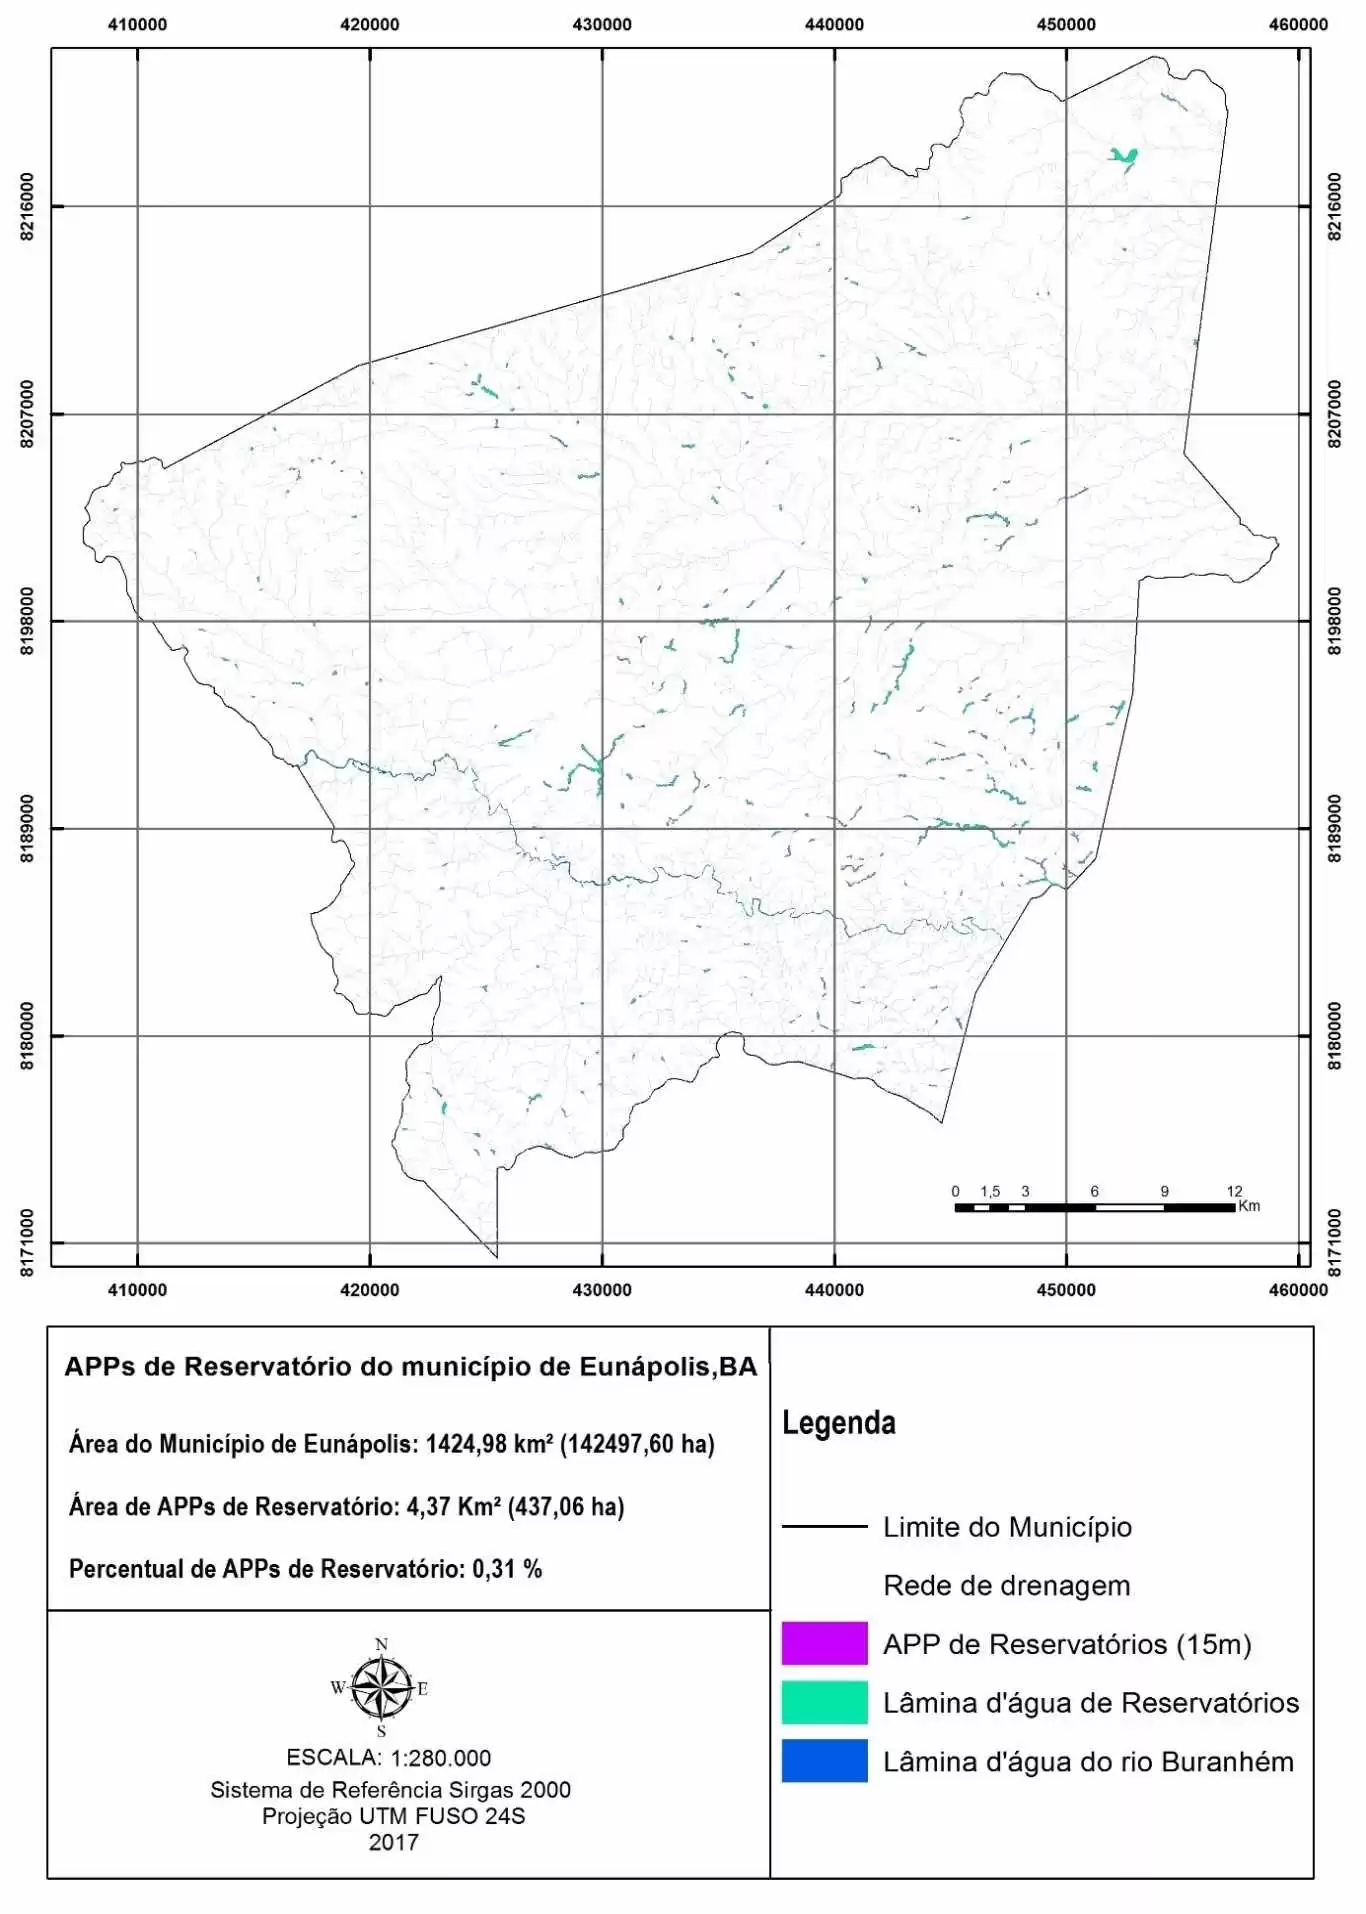 Área de preservação permanente no entorno dos reservatórios no município de Eunápolis, BA. Fonte: O autor